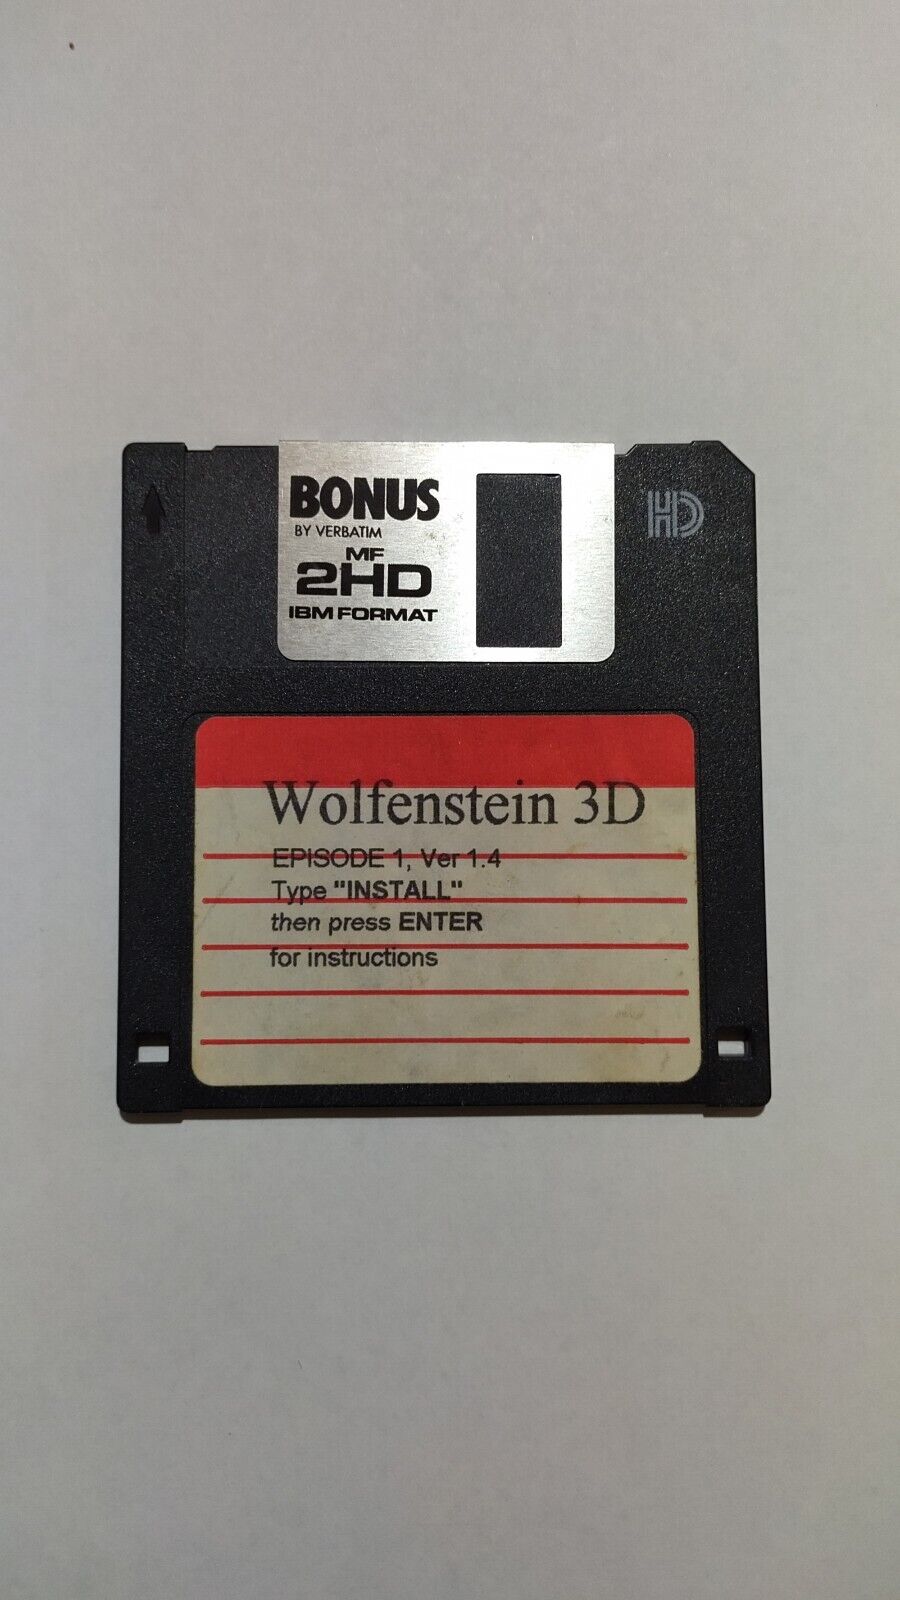 Wolfenstein 3d Version 1.4 Episode 1 on 3.5\